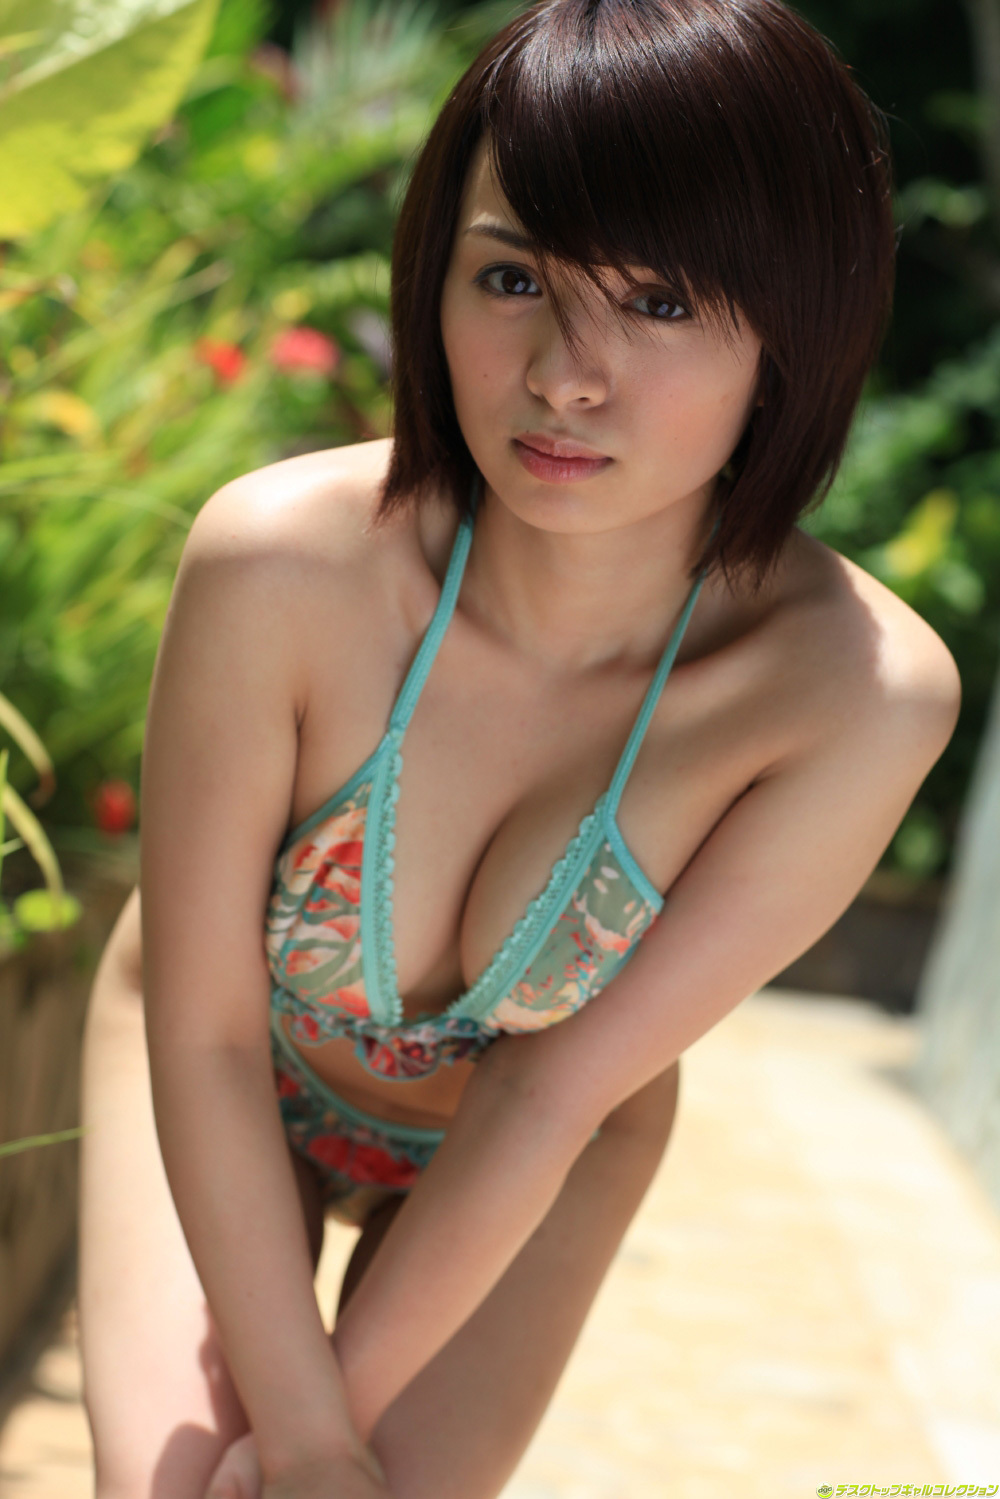 Japanese beauty girl